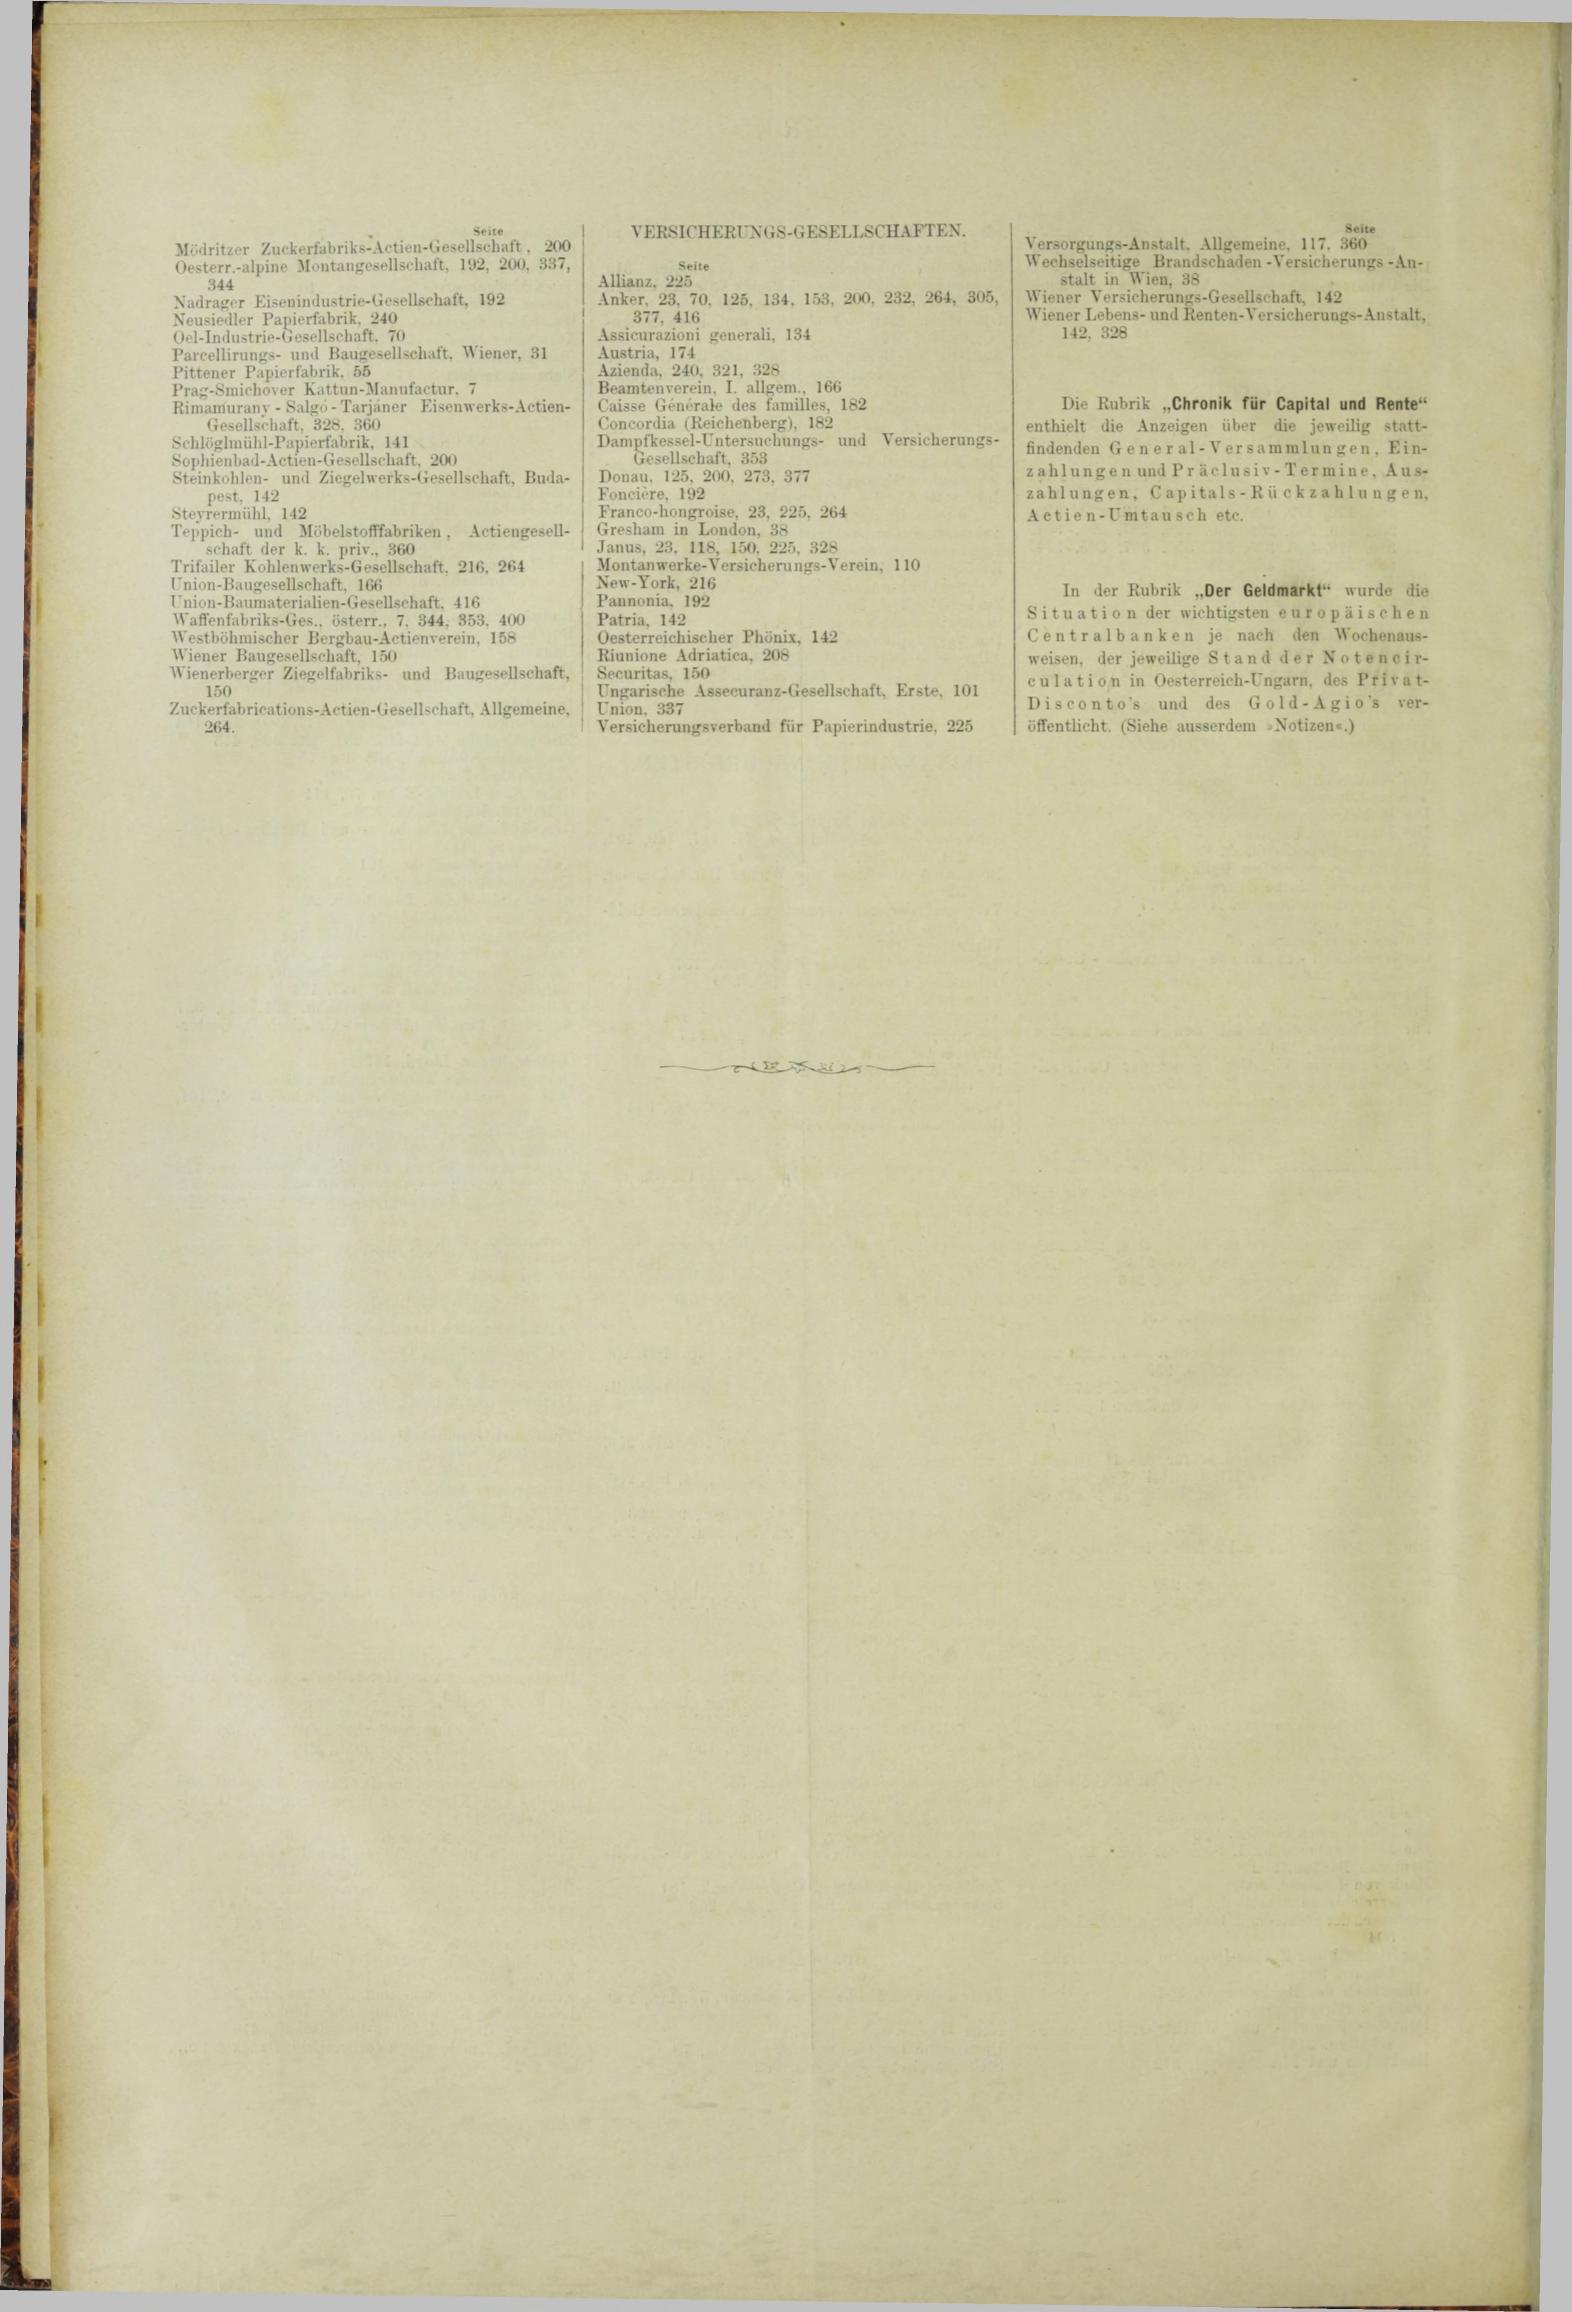 Der Tresor 13.12.1883 - Seite 12